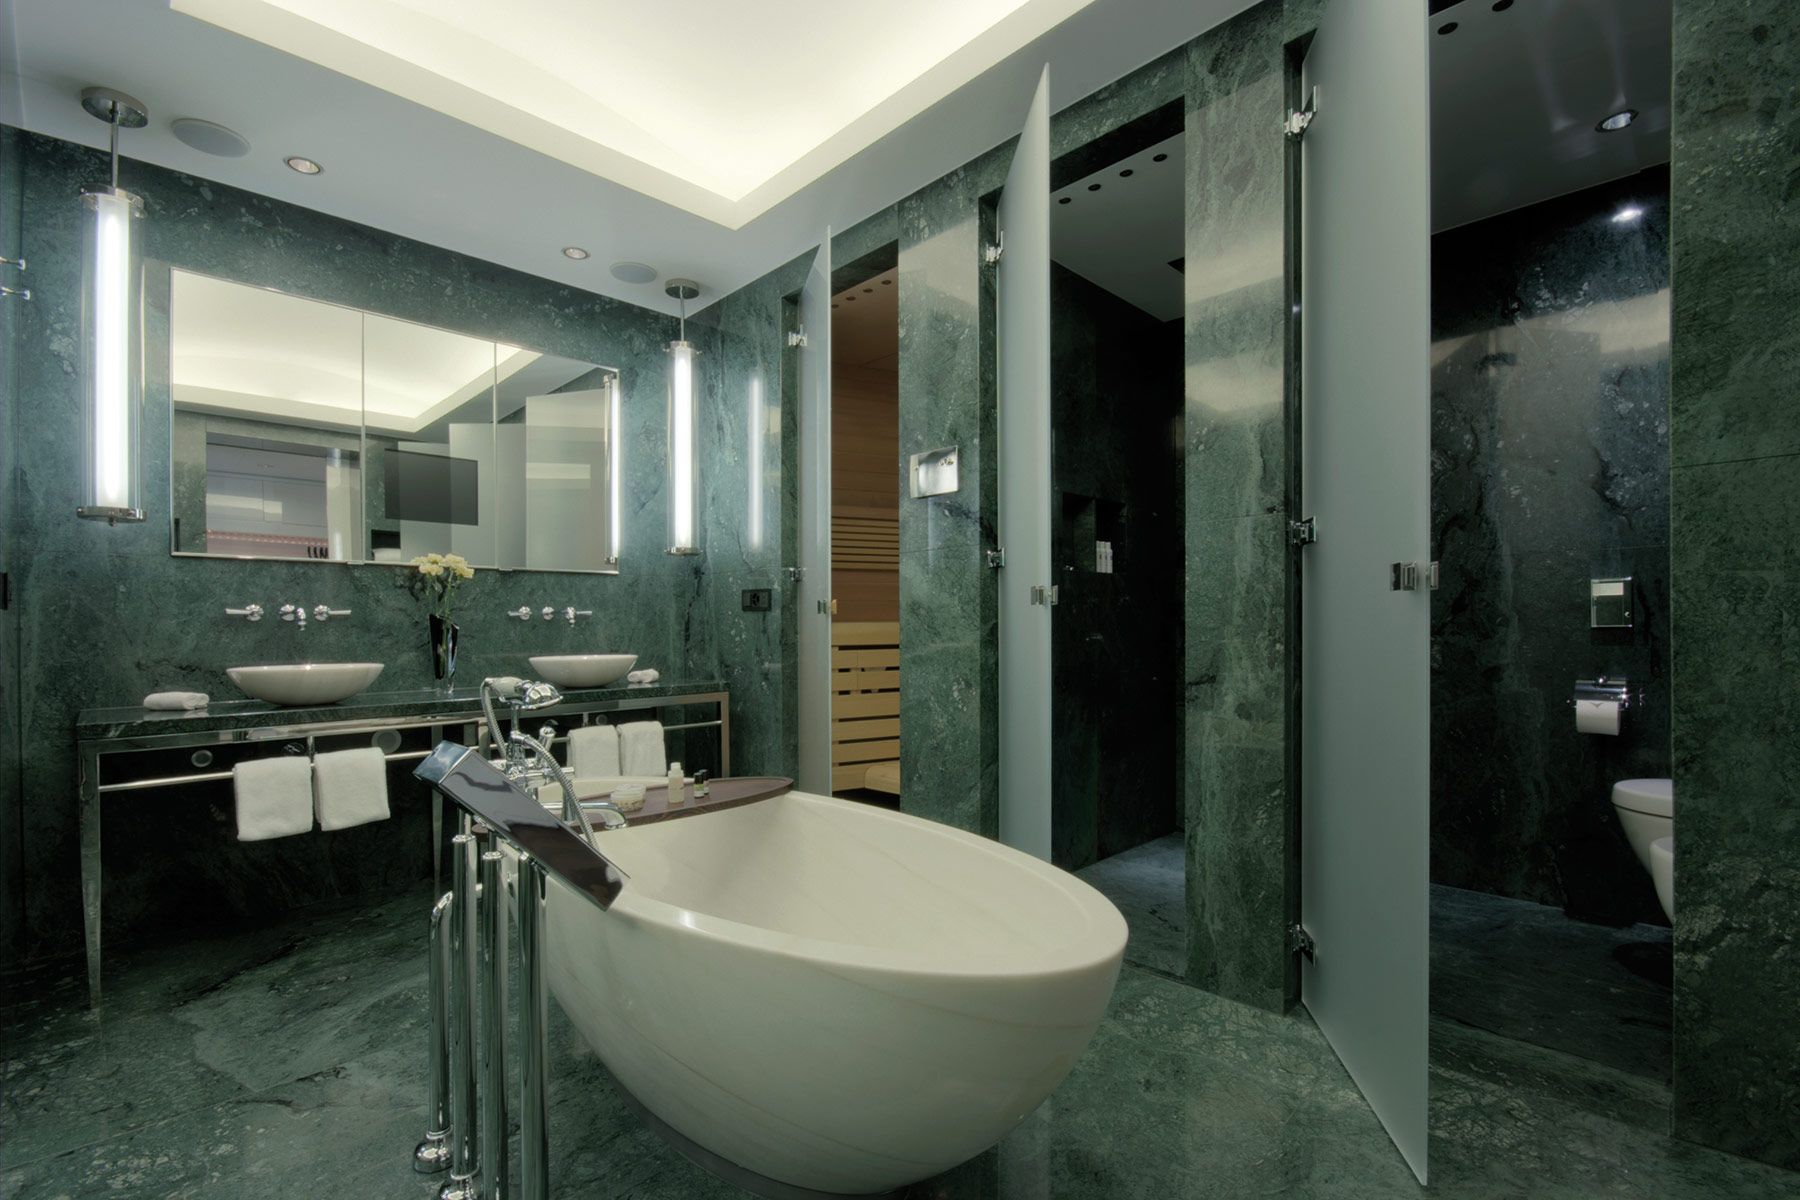 Badezimmer mit Steinoptik in Wand und Boden sowie freistehender Badewanne und einem großen Waschtisch